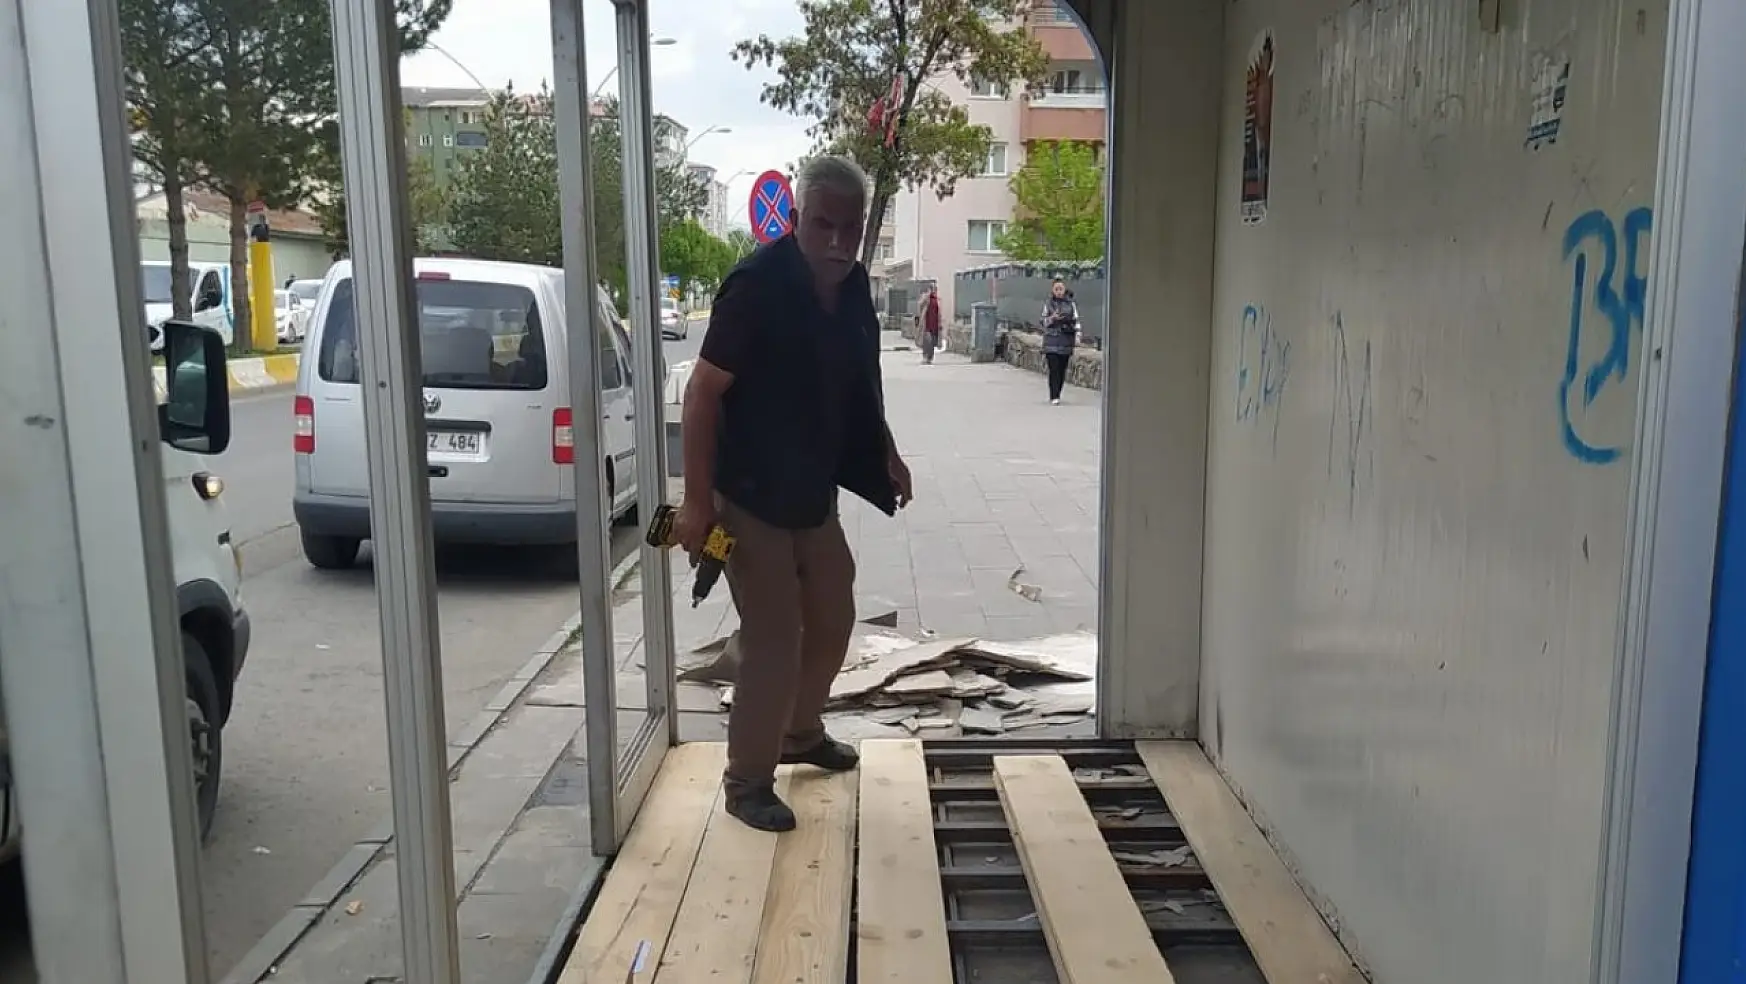 Ağrı Belediyesi, şehrin farklı noktalarında bulunan yolcu bekleme duraklarını onararak yeniliyor